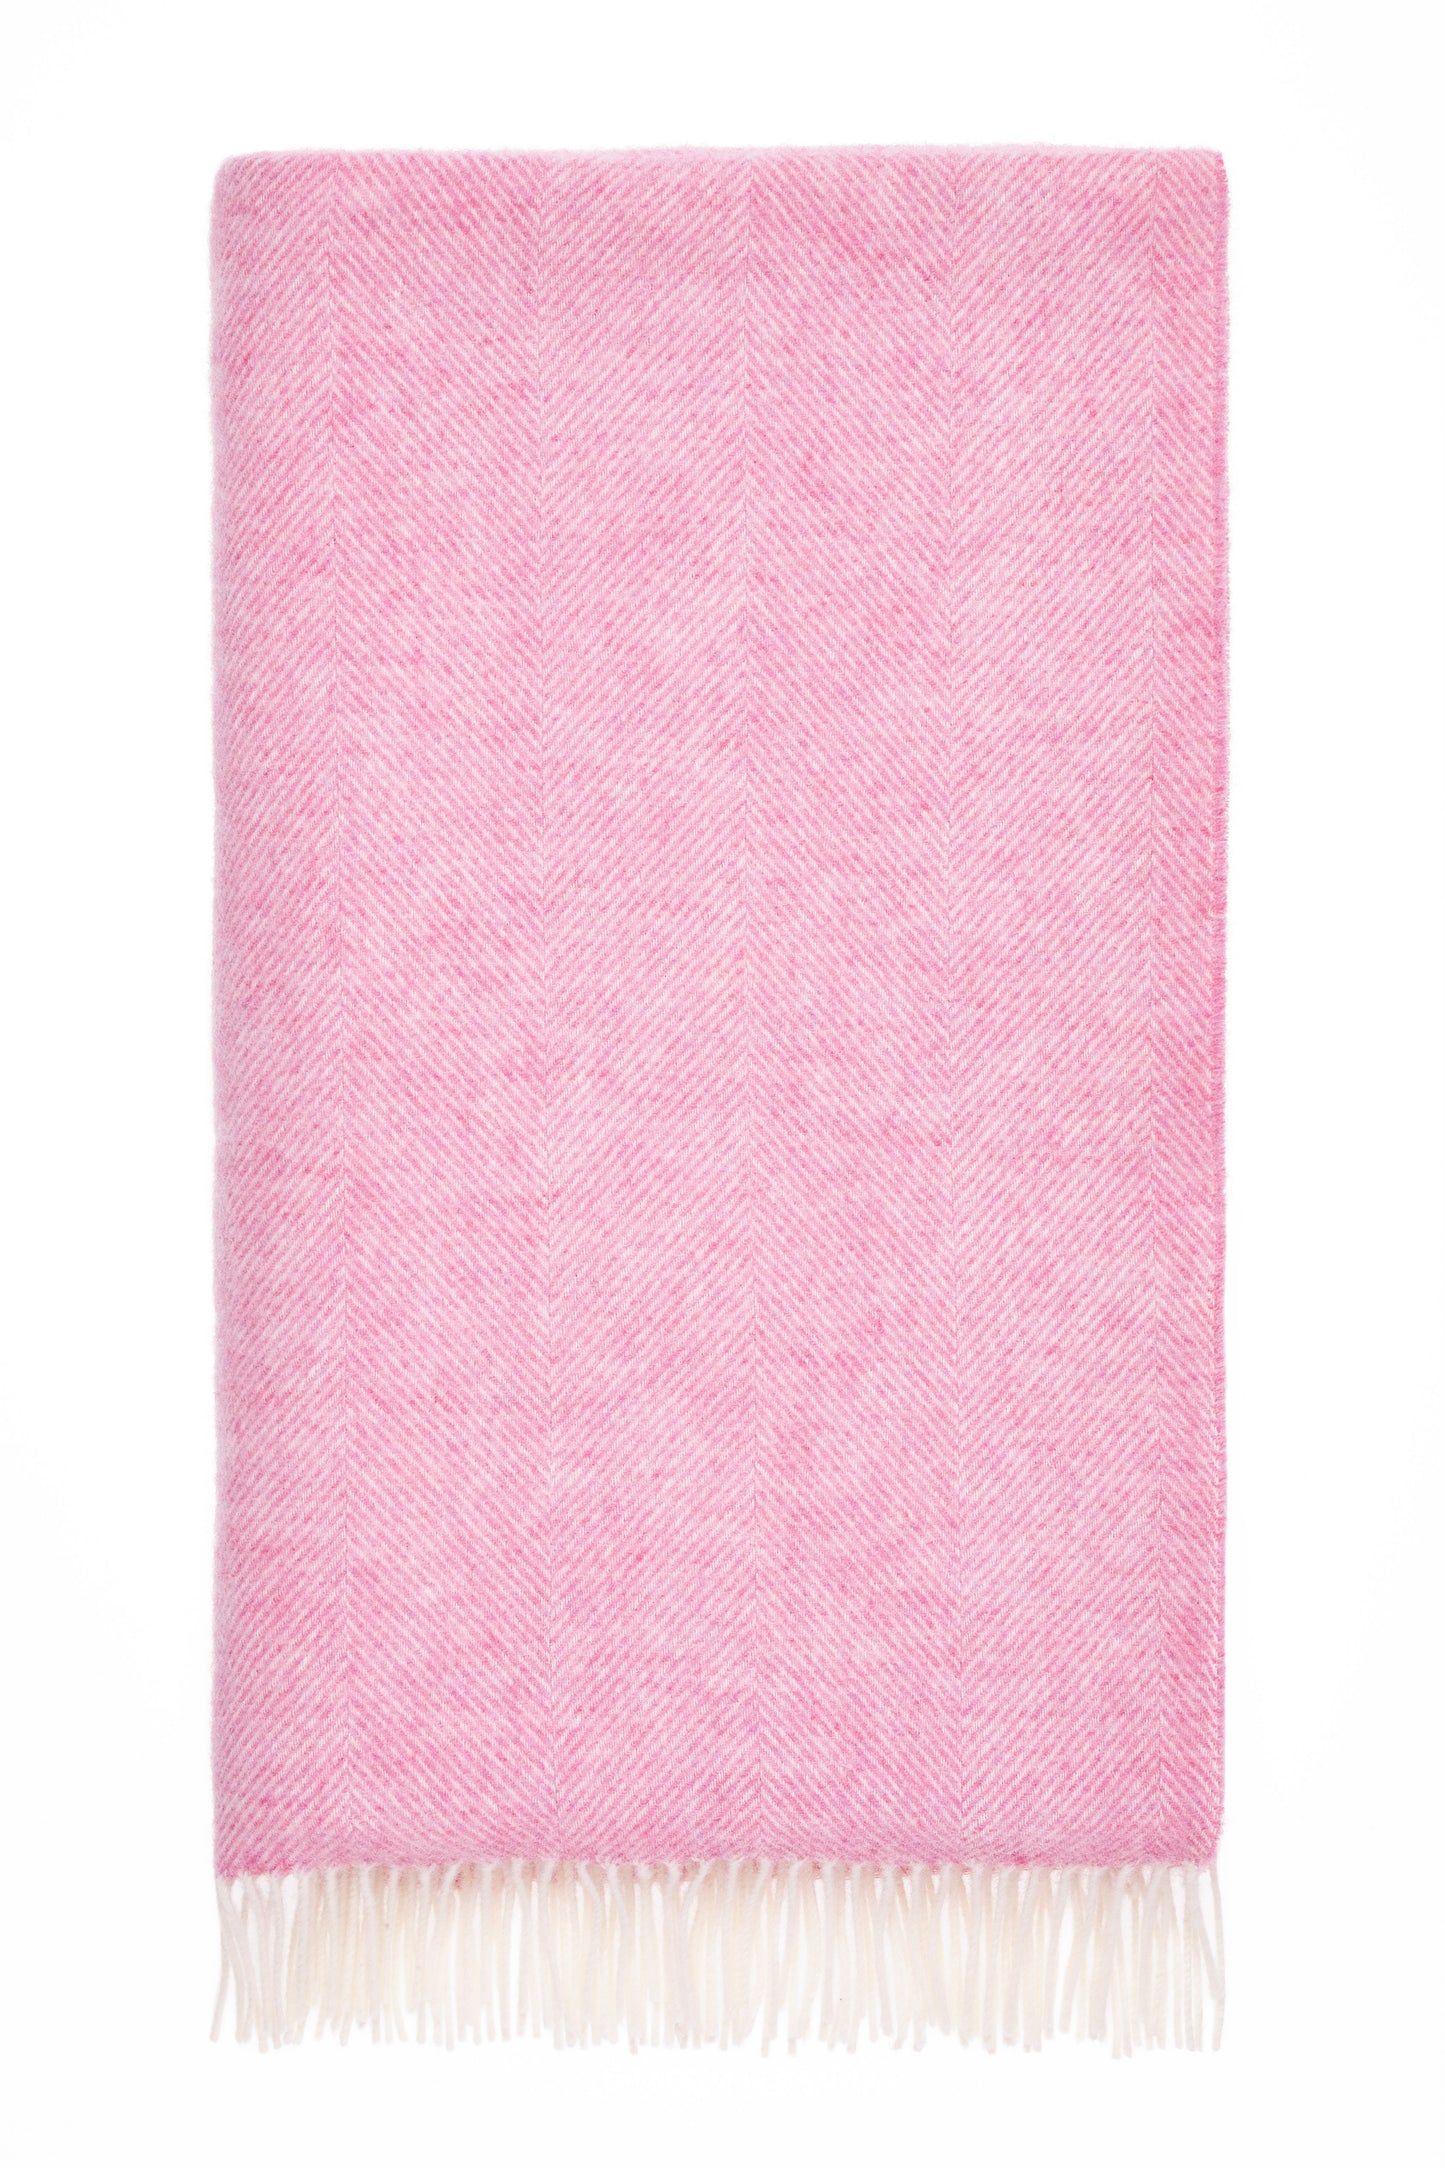 Bronte By Moon Herringbone Shetland Wool Throw, Pale Pink